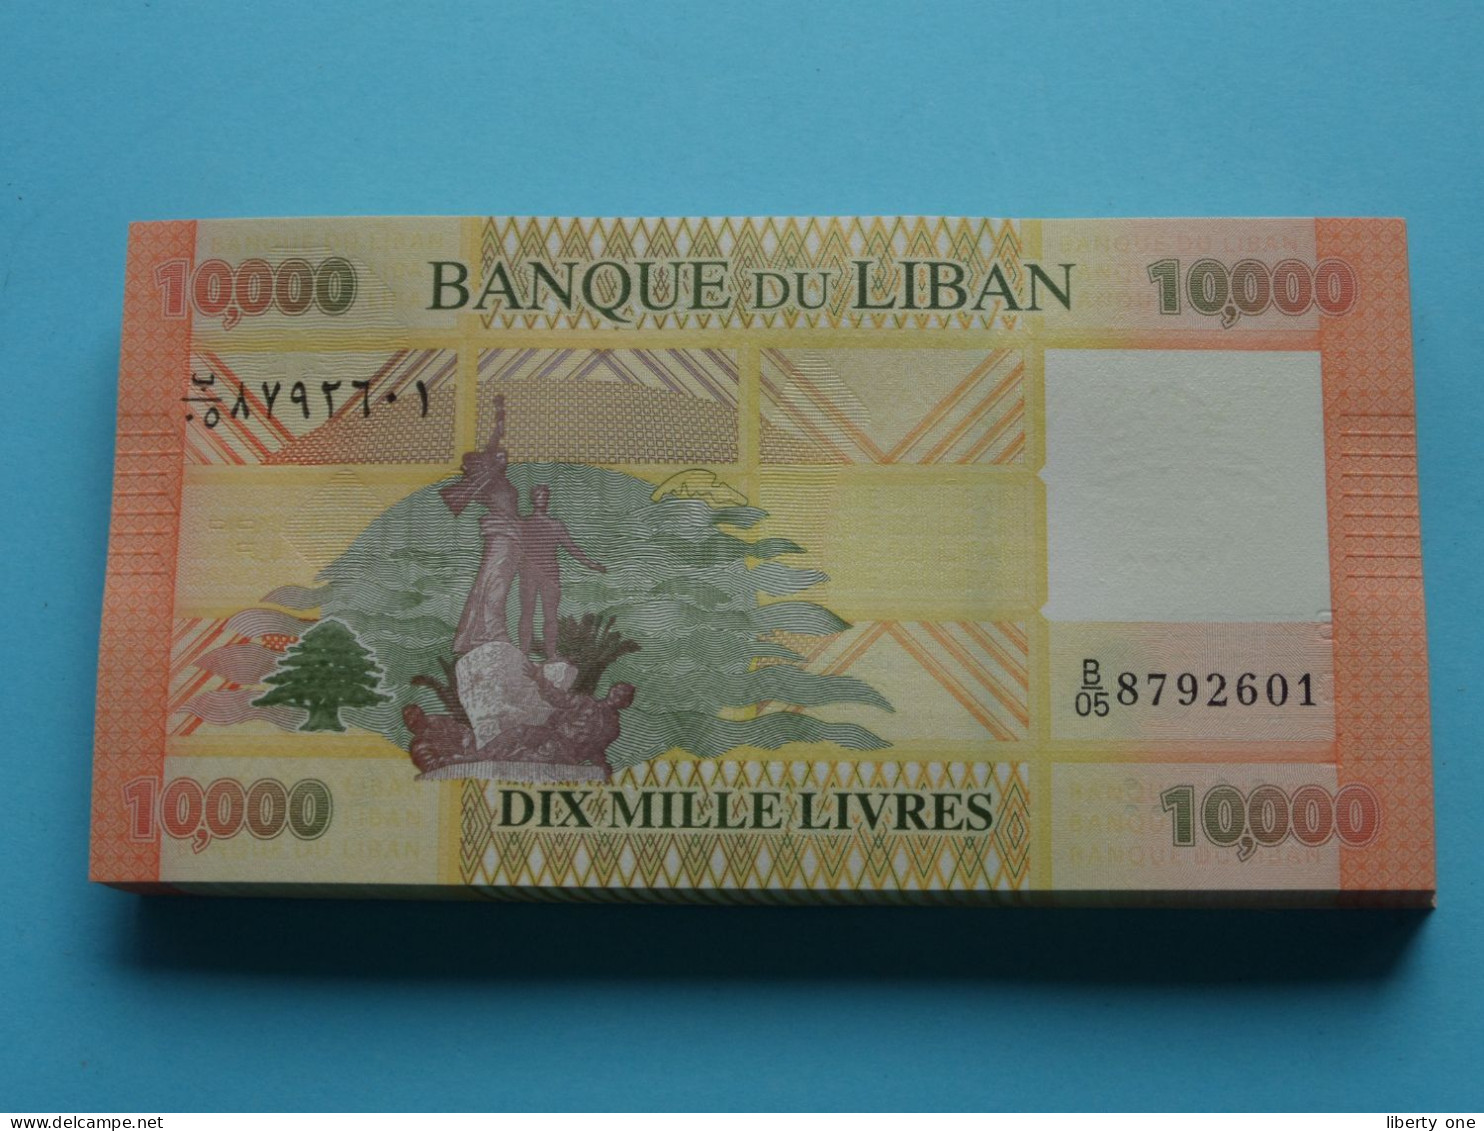 10.000 Dix Mille Livres ( Banque Du Liban ) Lebanon 2014 ( For Grade, Please See SCANS ) UNC ! - Libanon